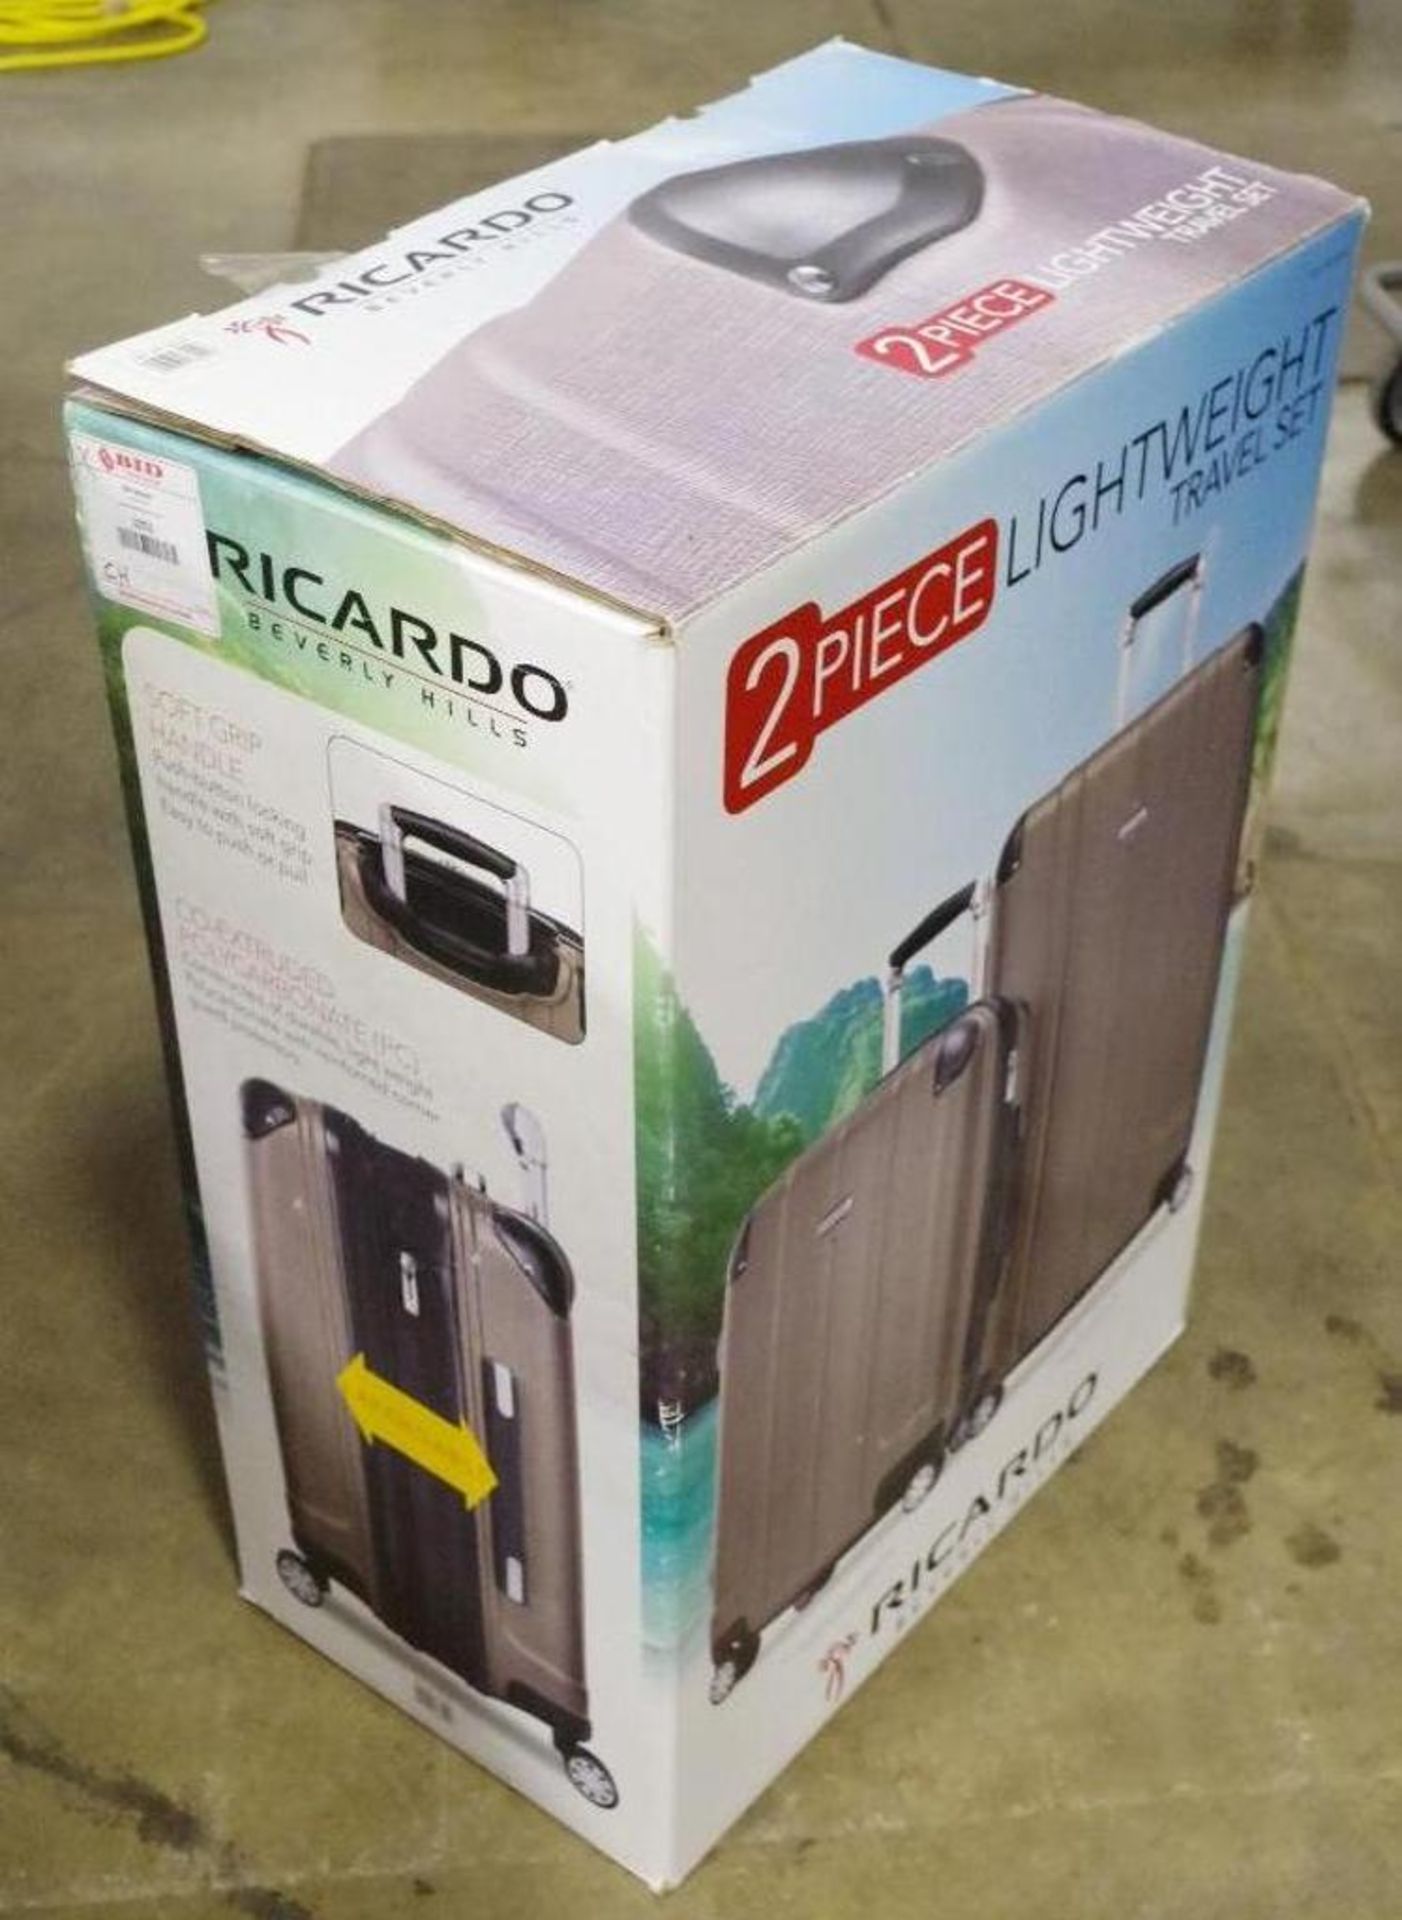 RICORADO 2-Piece Lighweight Travel Set (1 Box of 2) - Image 2 of 4